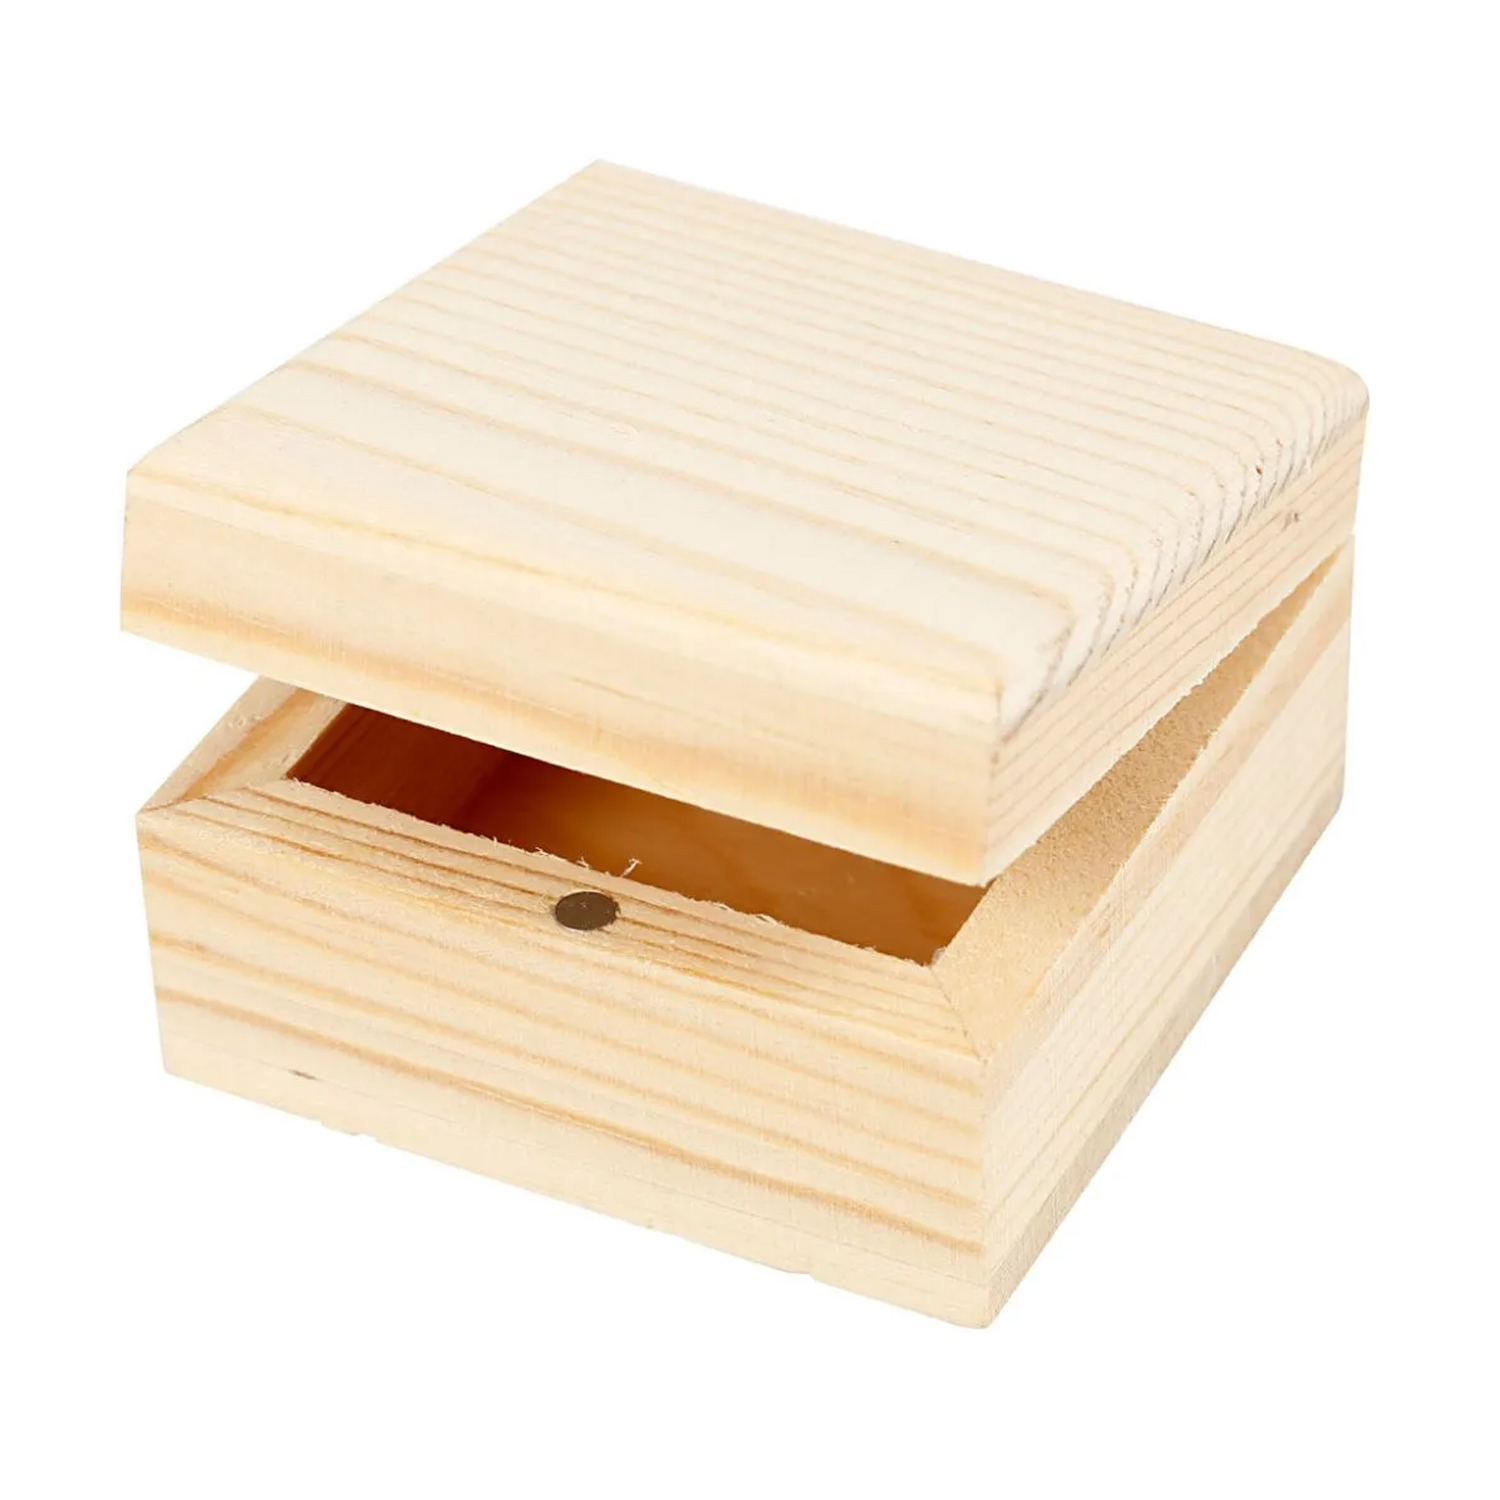 NEU Schmuckkasten aus Holz mit Magnetschliee, 6 x 6 x 3,5 cm, 1 Stck